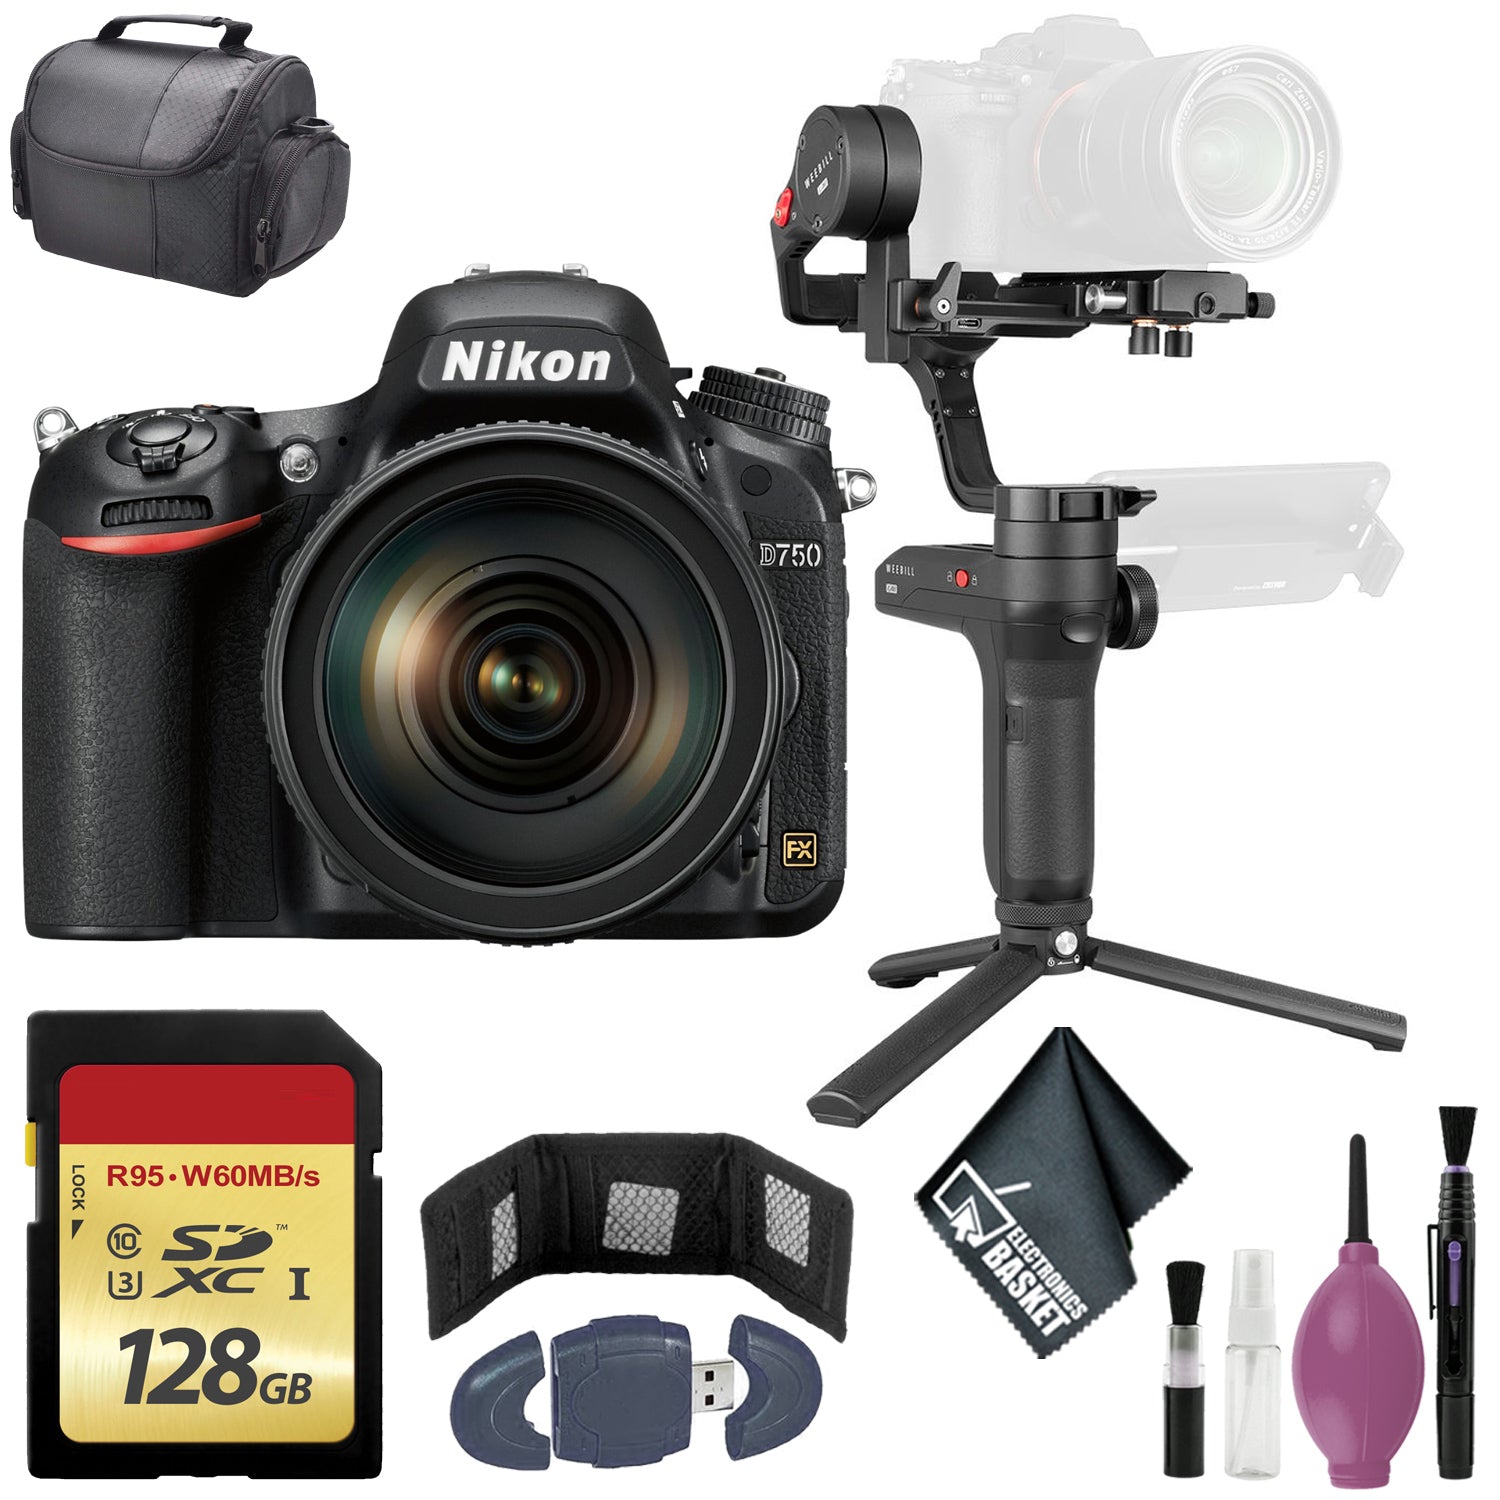 Zhiyun-Tech WEEBILL LAB Handheld Stabilizer - Nikon D850 FX-format Digital SLR Camera Body w/ AF-S NIKKOR 24-120MM F/4G ED VR Lens - 128GB Case